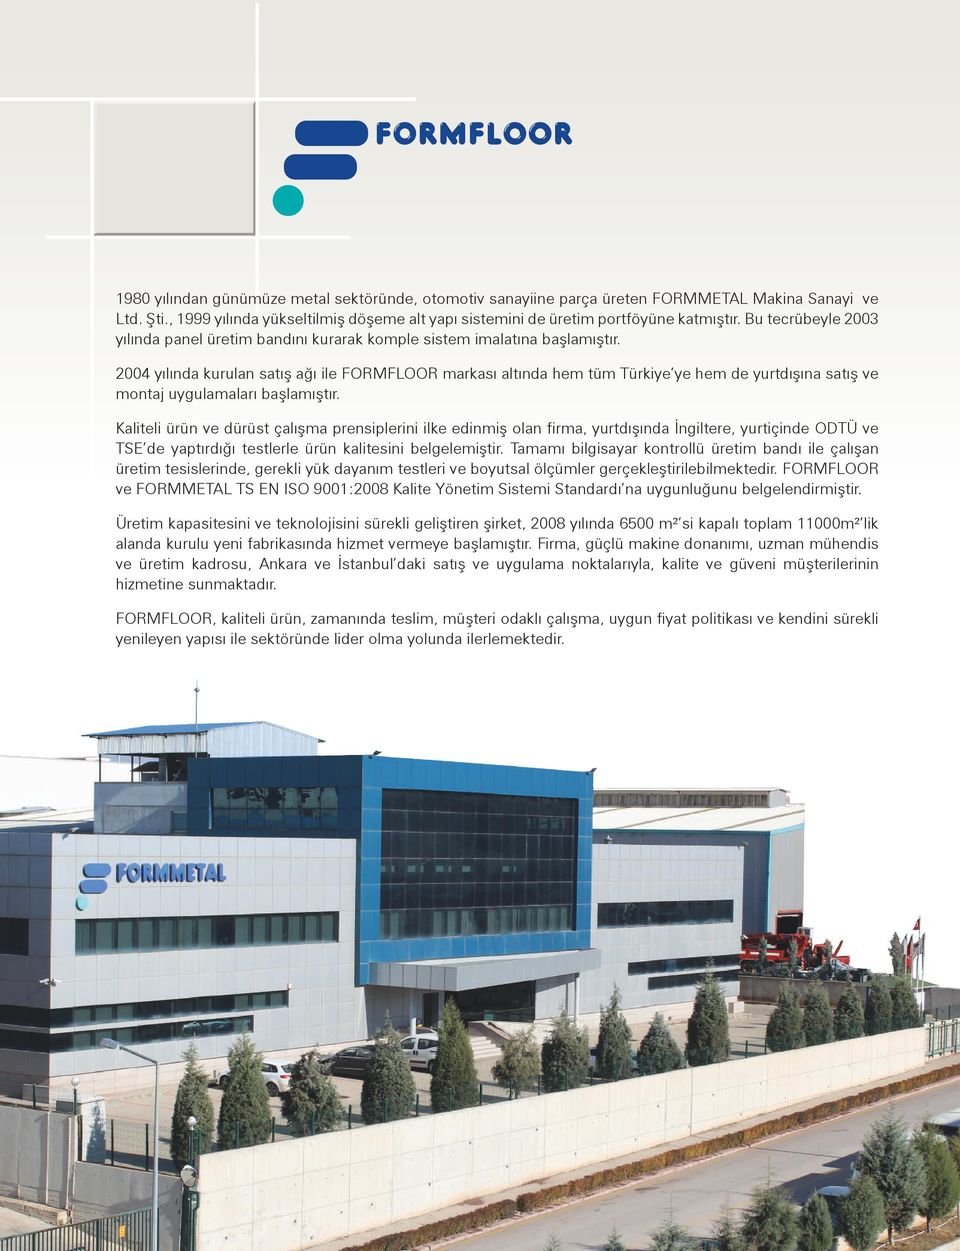 2004 yılında kurulan satış ağı ile FORMFLOOR markası altında hem tüm Türkiye ye hem de yurtdışına satış ve montaj uygulamaları başlamıştır.